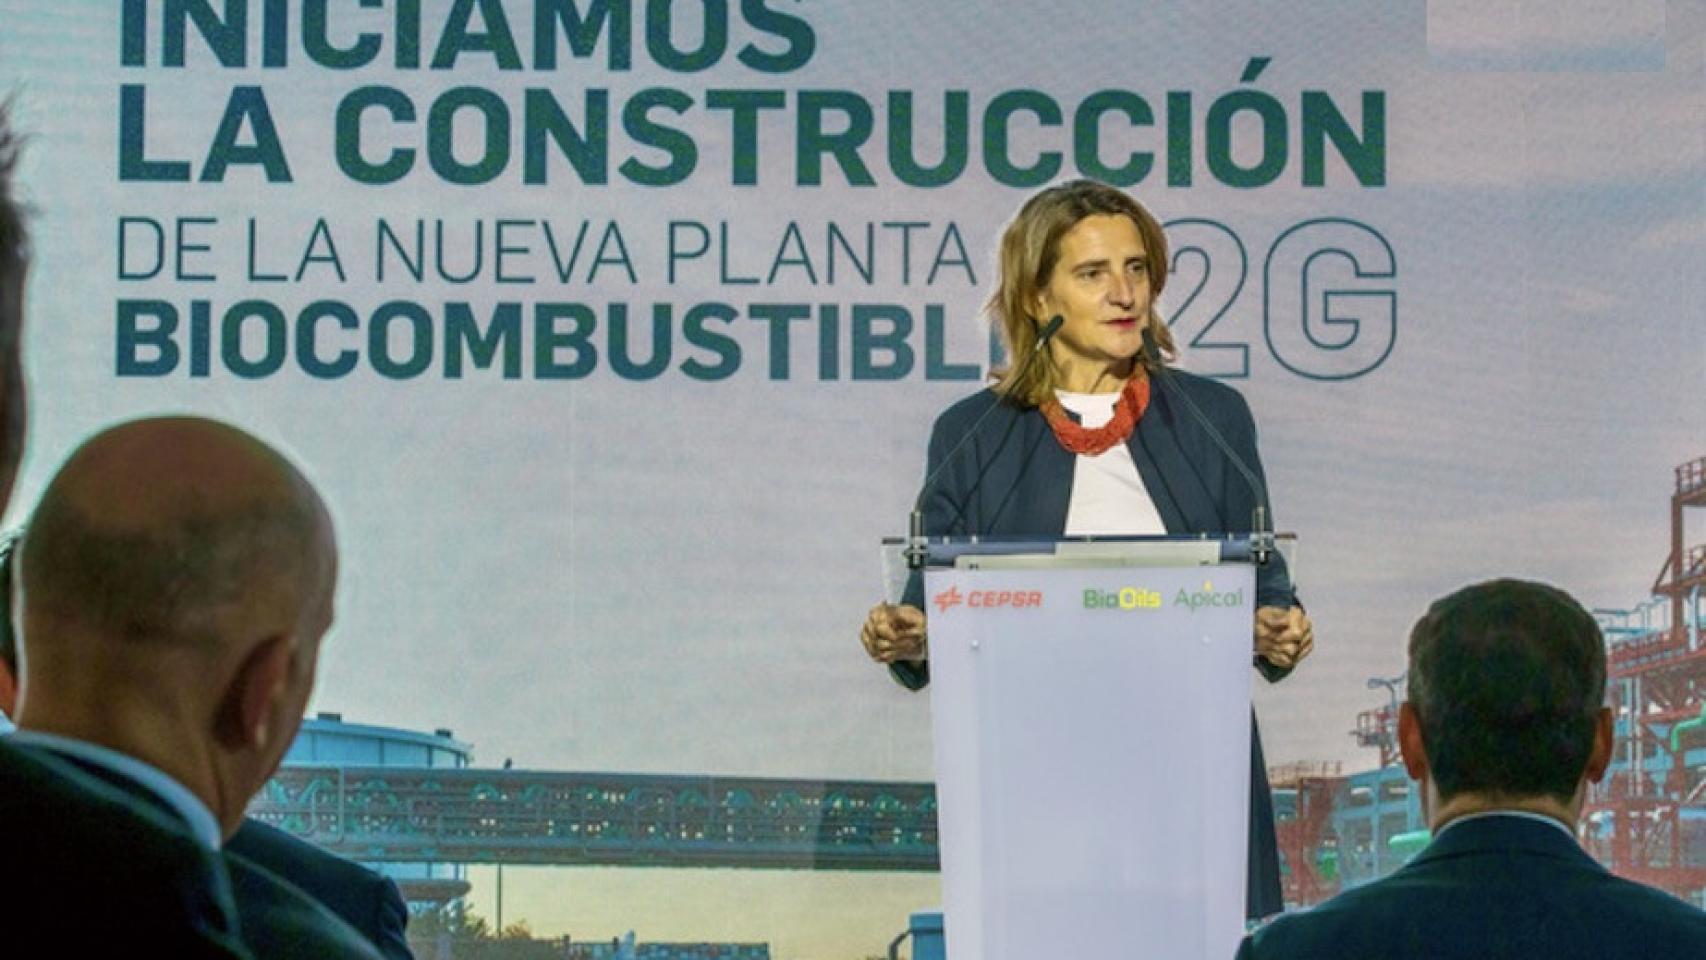 La vicepresidenta tercera y ministra para la Transición Ecológica, Teresa Ribera, en la presentación de la planta de biocombustibles de Cepsa en Palos de la Frontera (Huelva)